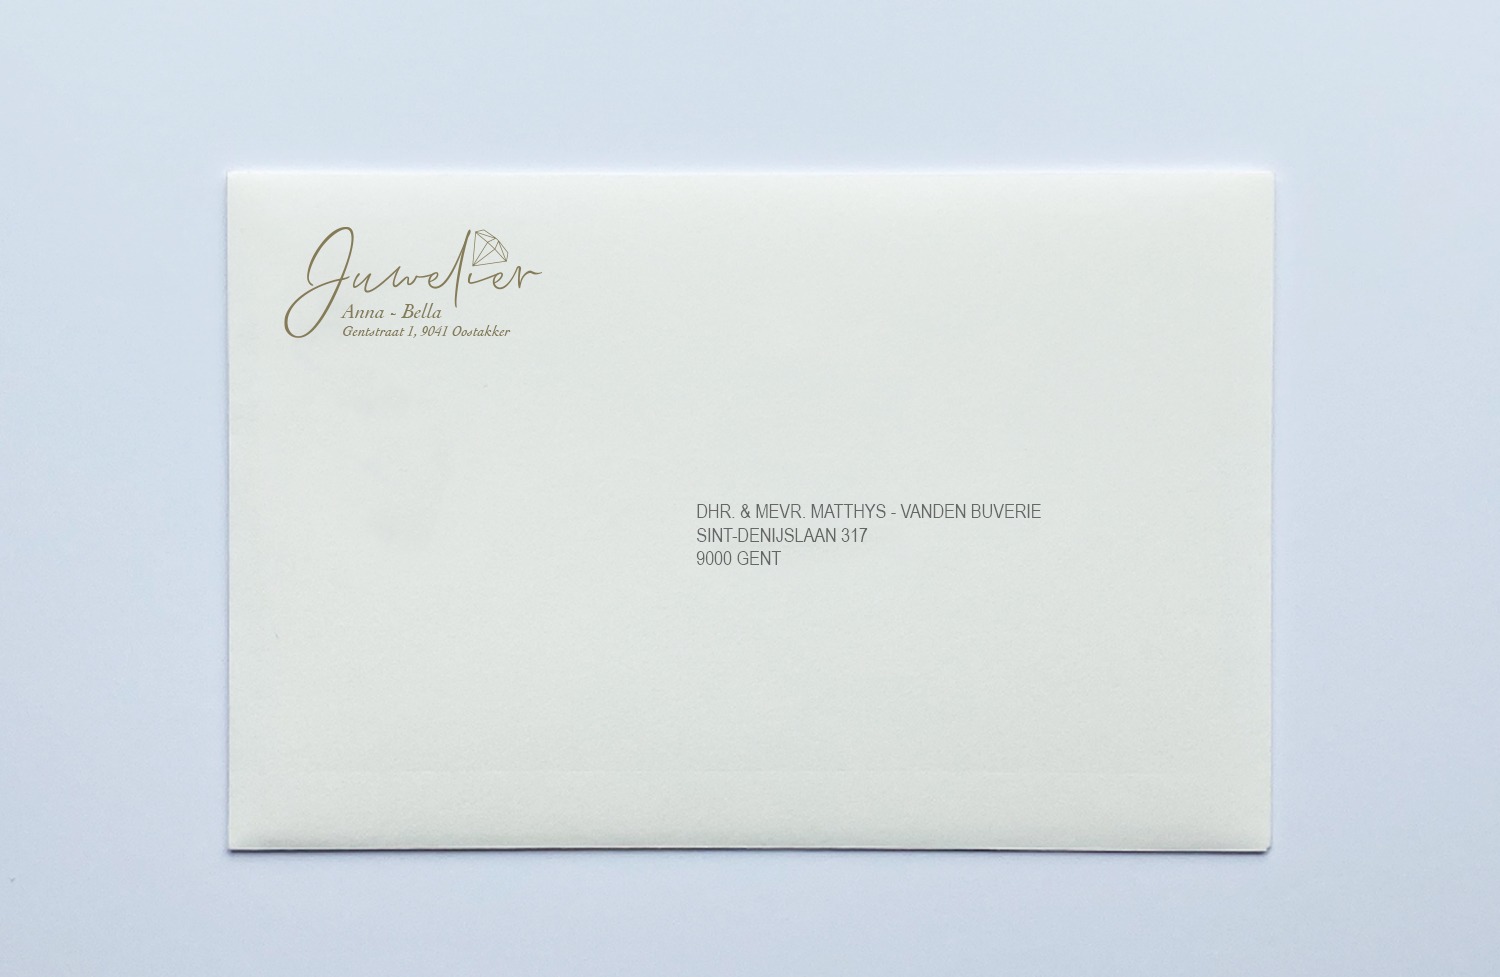 Voorbeeld envelop met personalisatie zakelijk